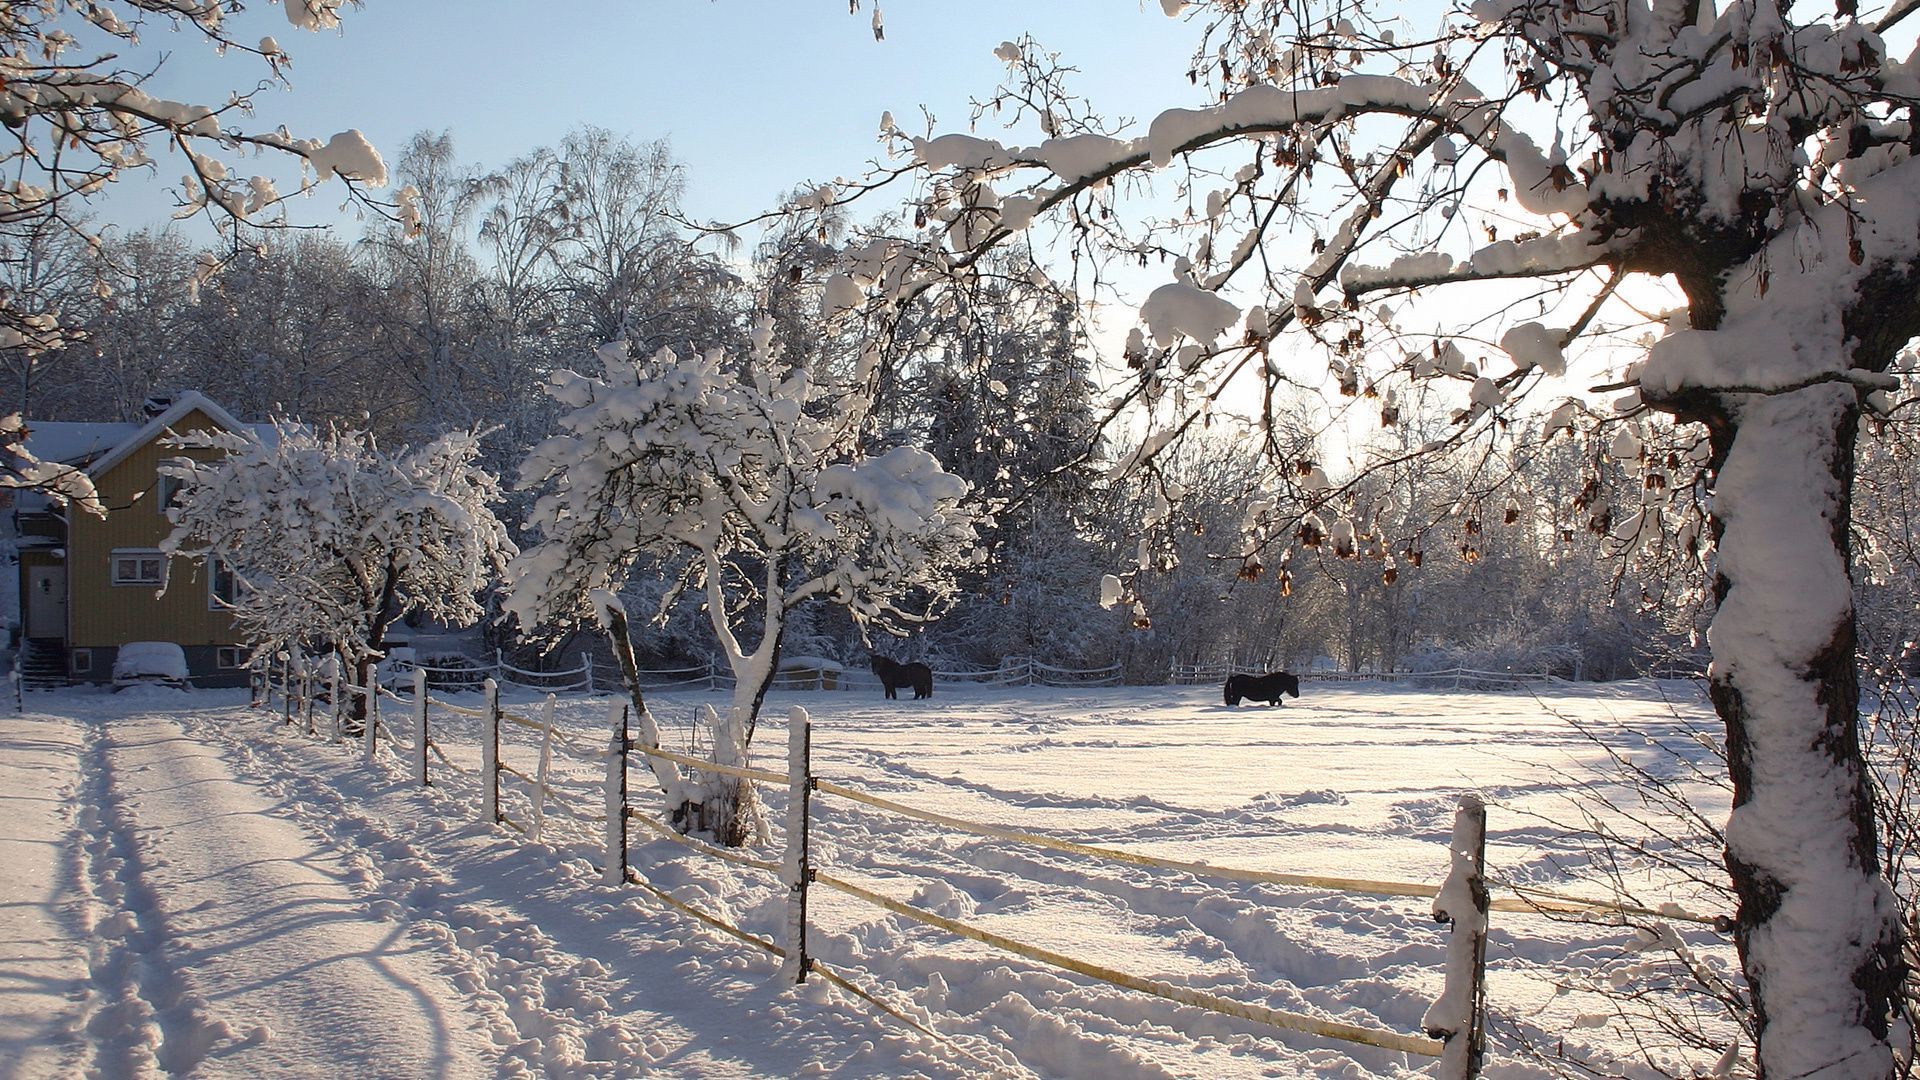 зима снег дерево холодная мороз филиал замороженные погода лед сезон пейзаж древесины снег-белый пургу природа сцена парк морозный